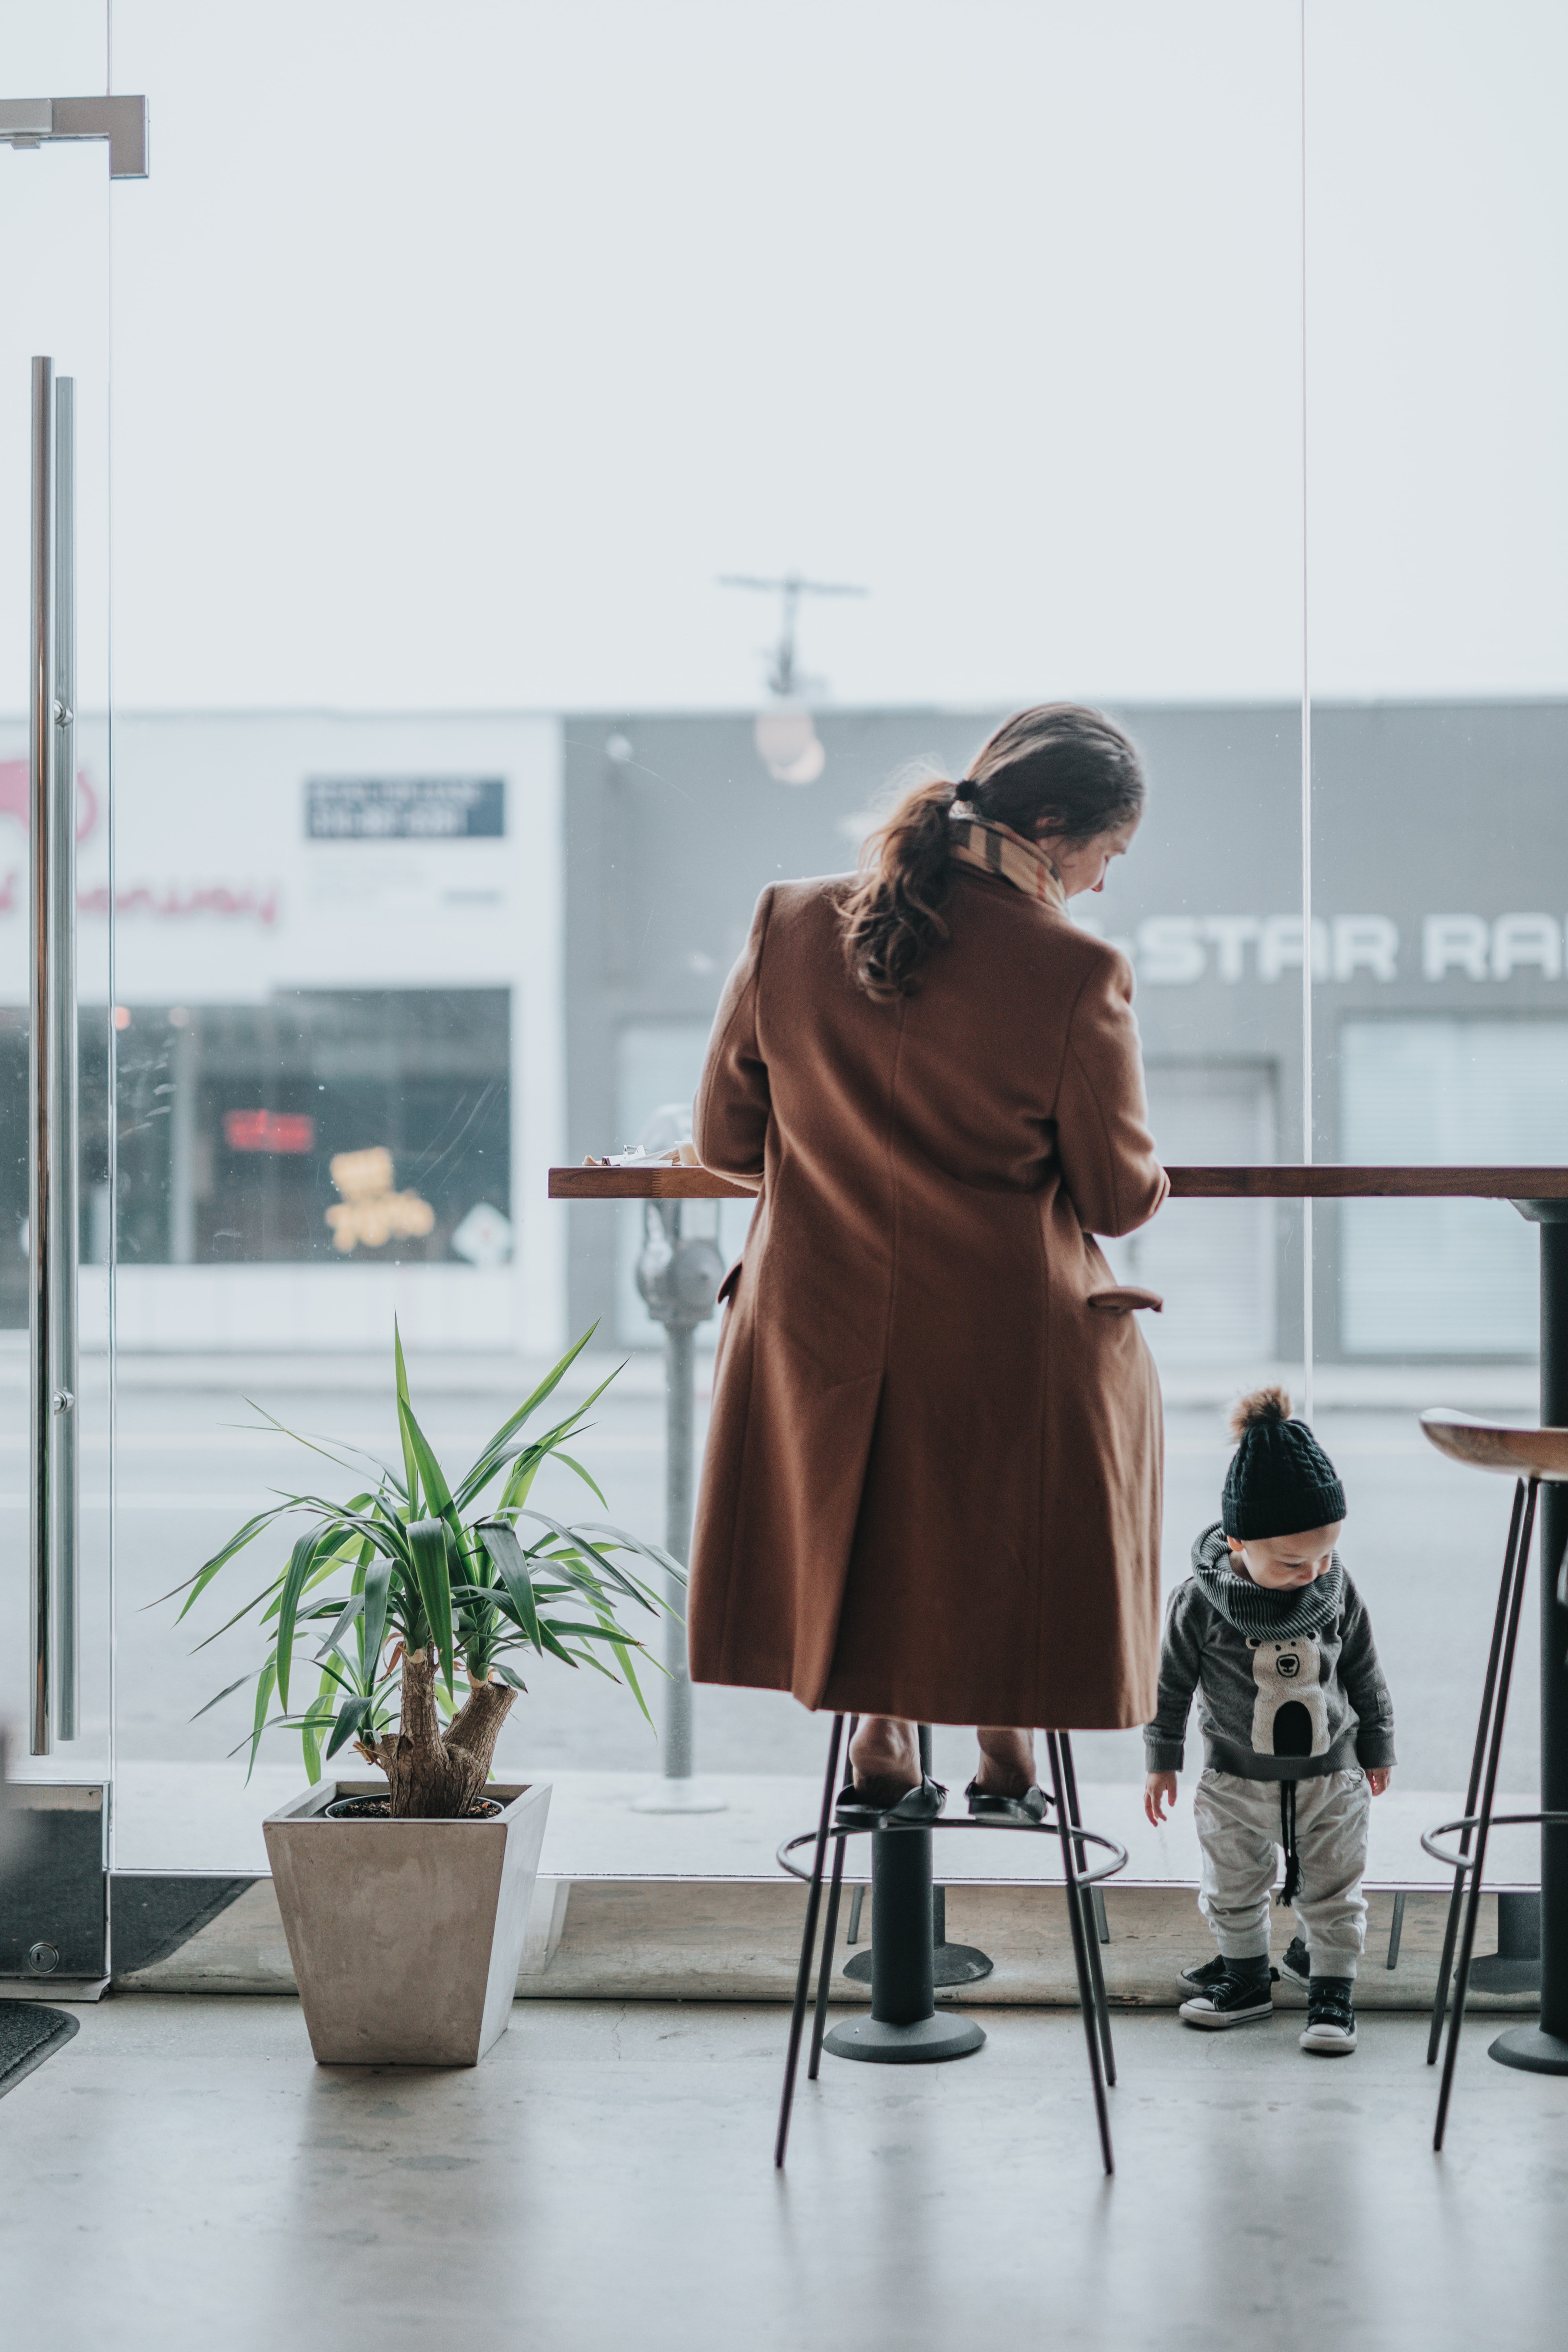 Frau nimmt ihr Kind mit in ein Café | Quelle: Unsplash